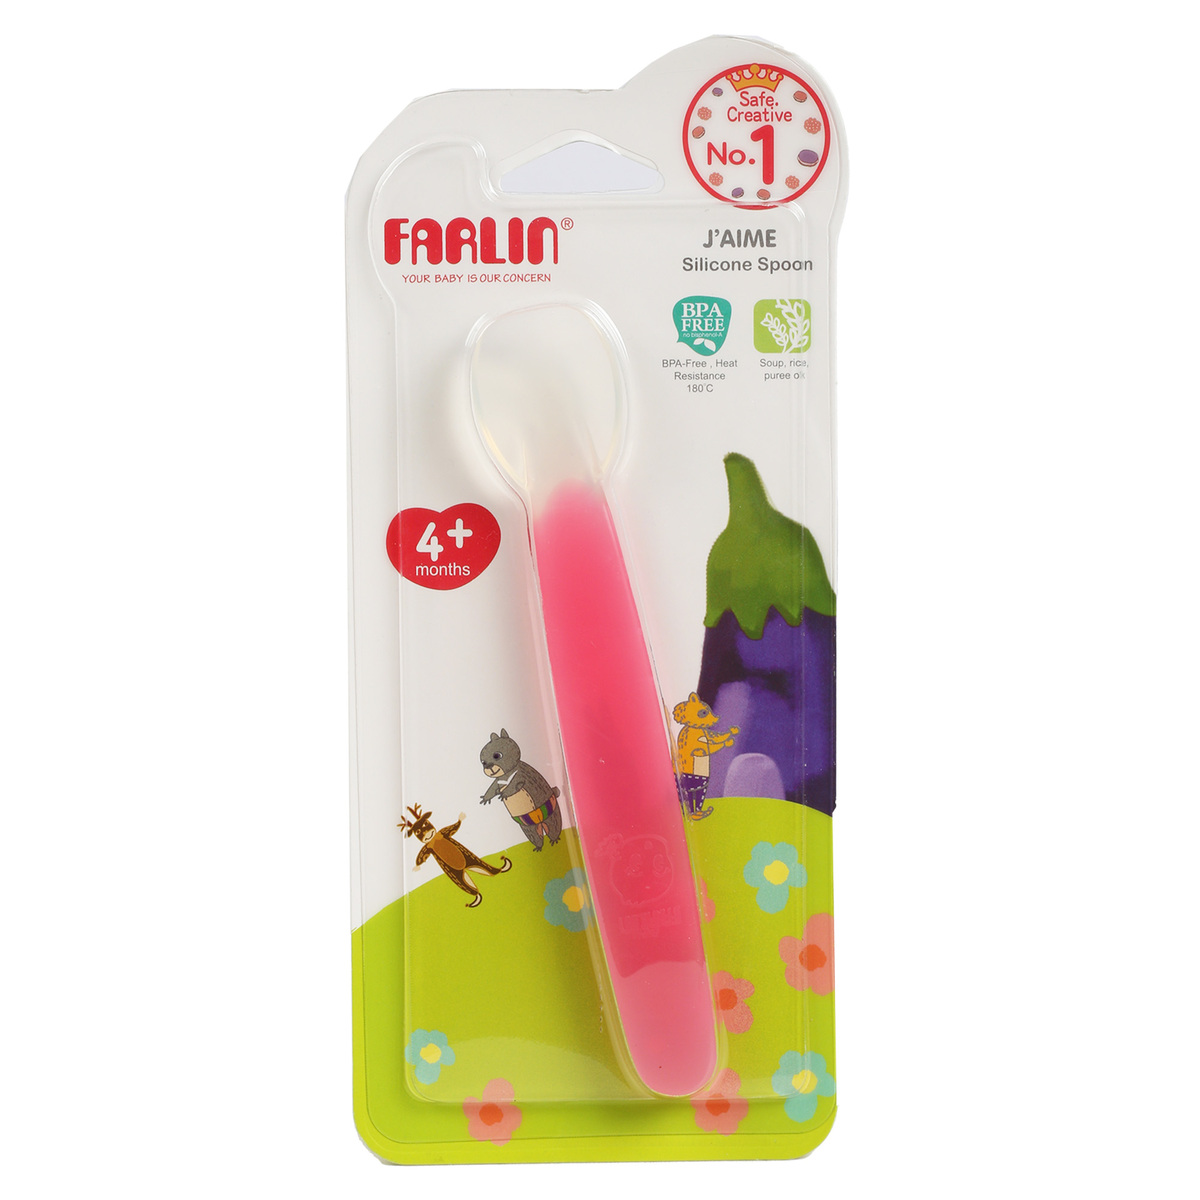 Farlin Silicone Spoon BF239 1 pc